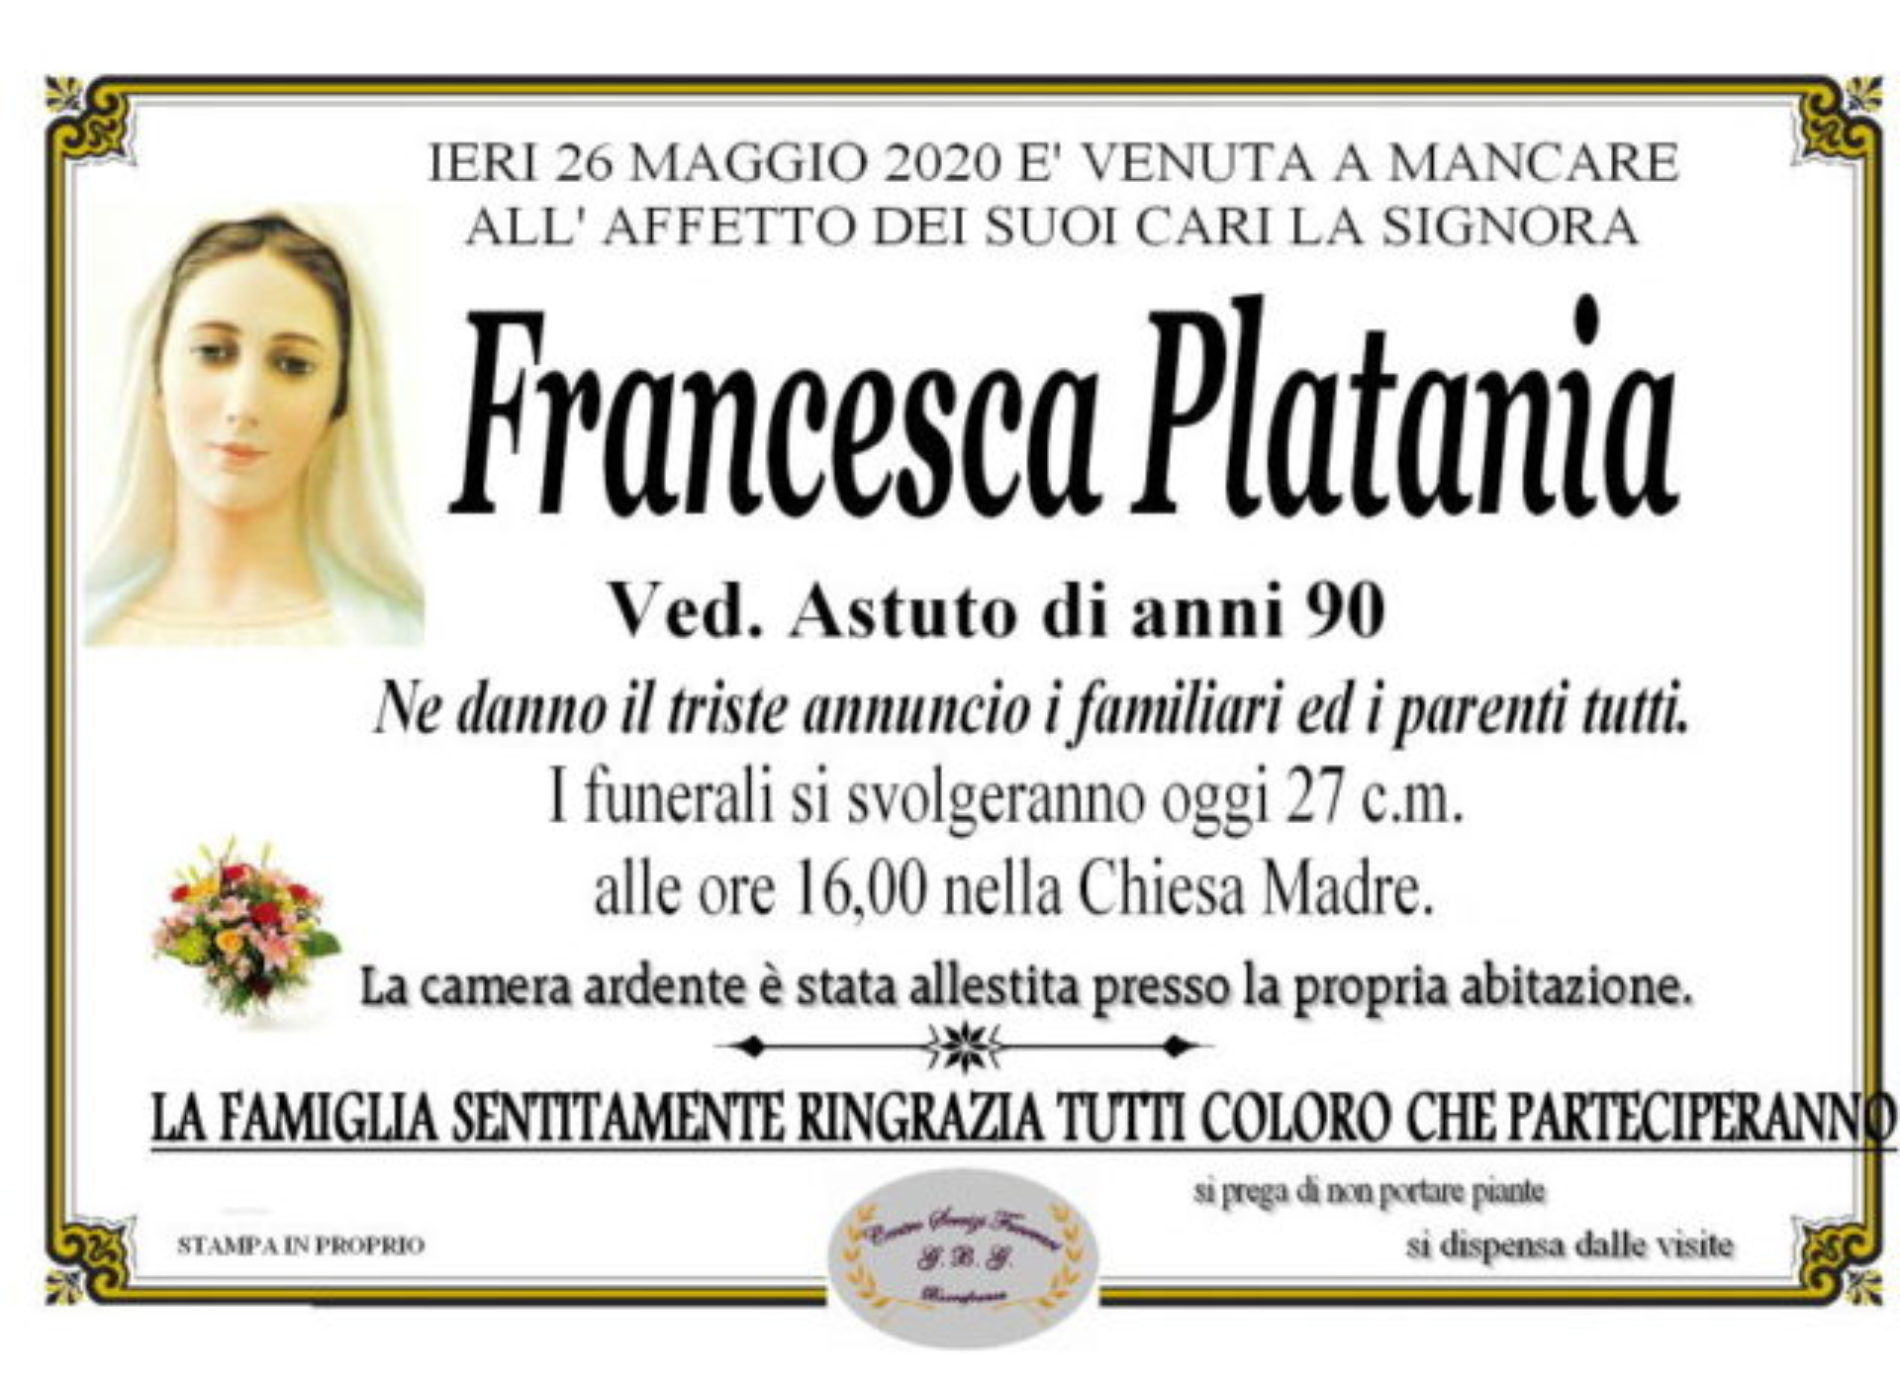 Annuncio Centro servizi funerari G.B.G. Francesca Platania ved. Astuto